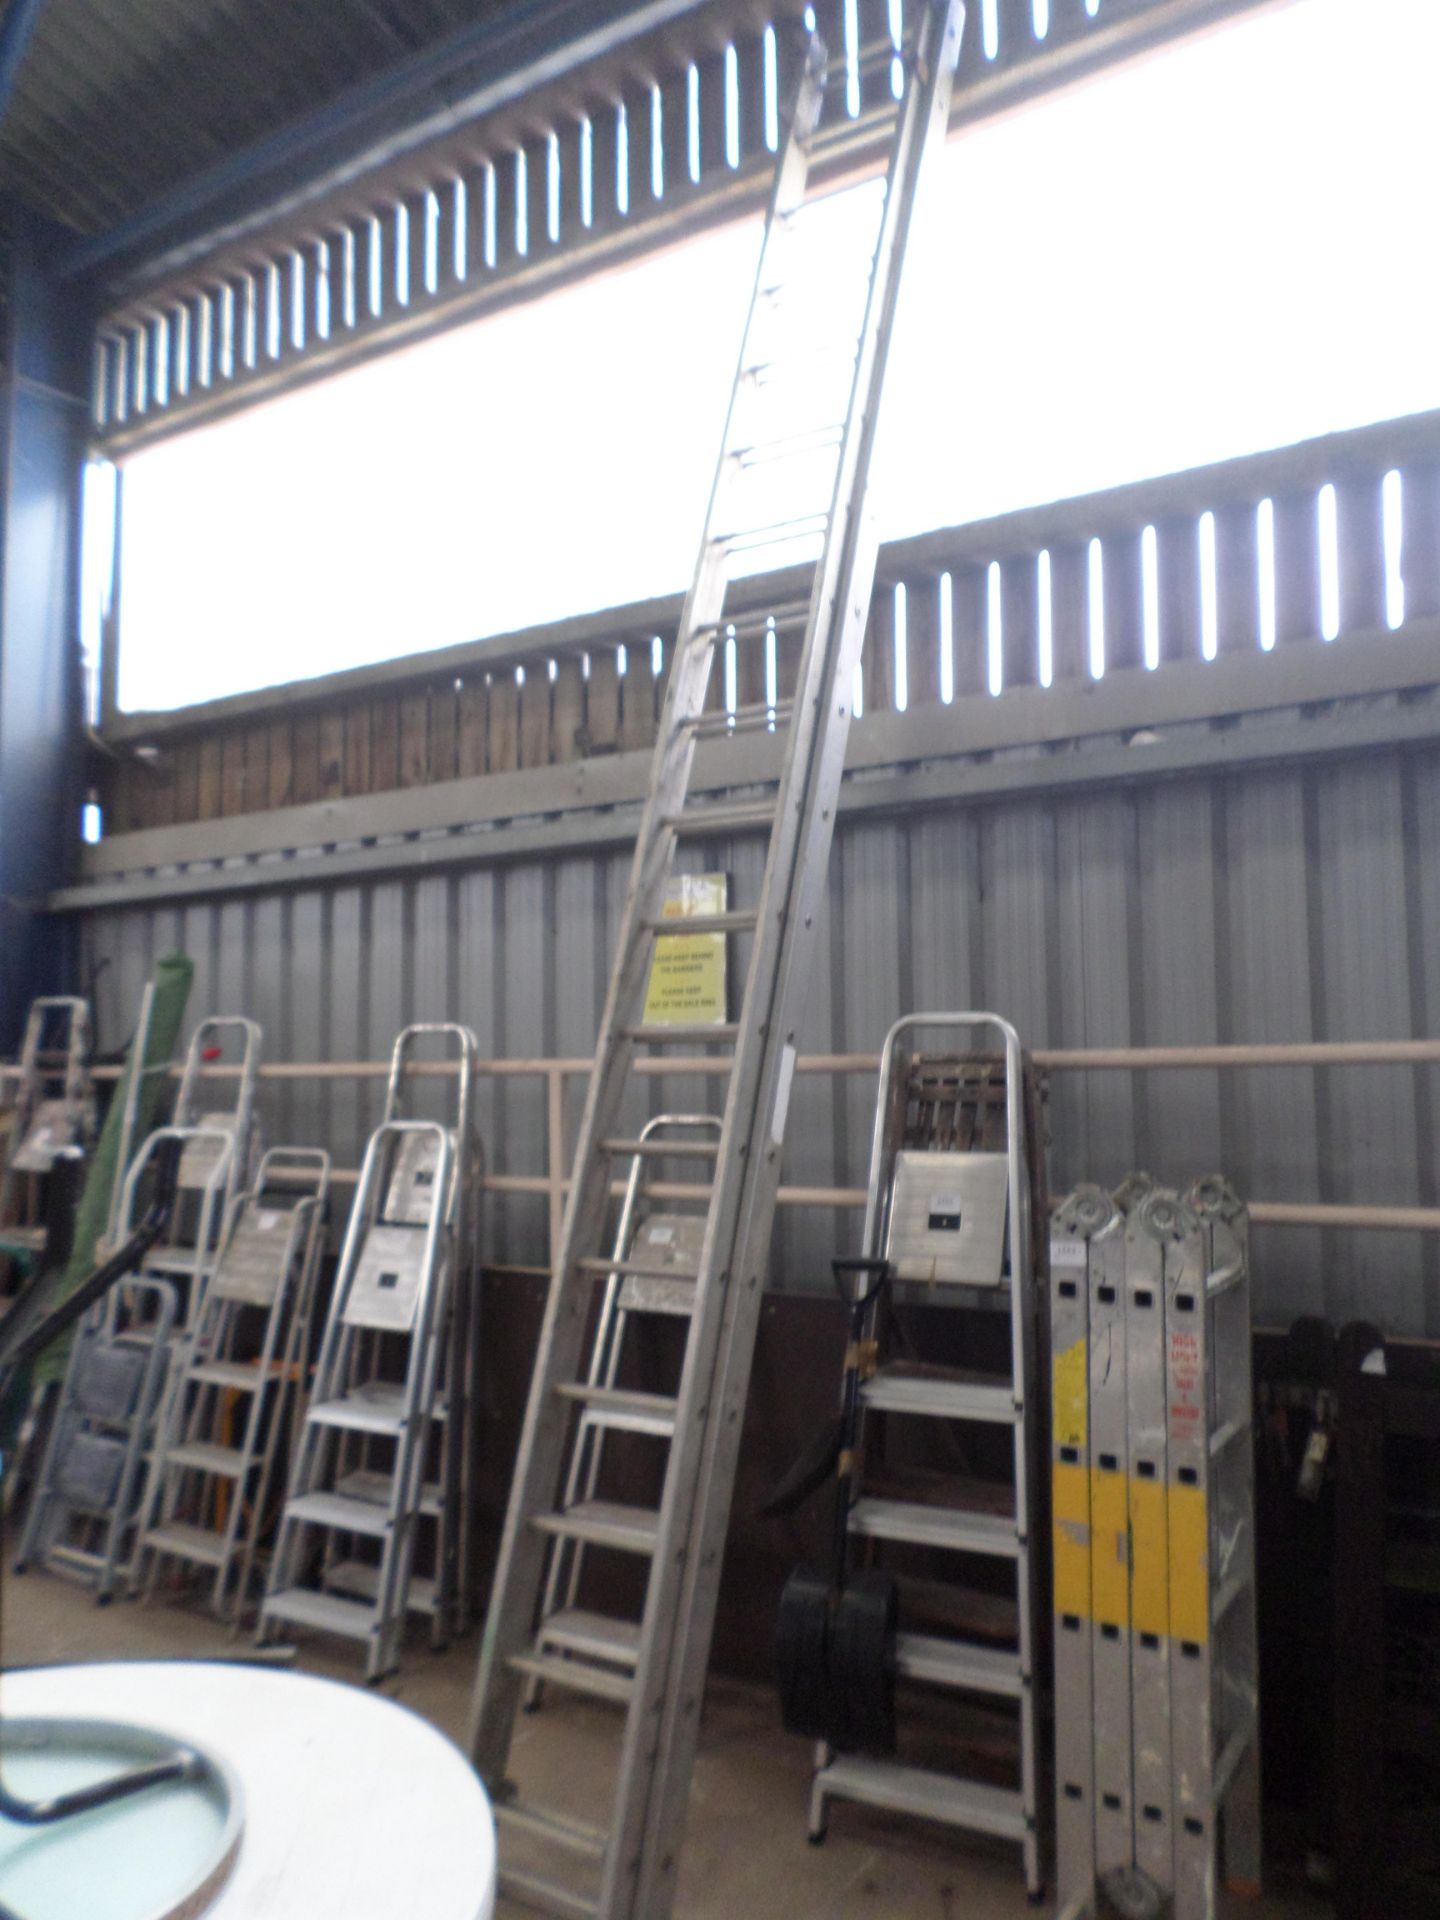 Extending metal ladders - Image 3 of 3